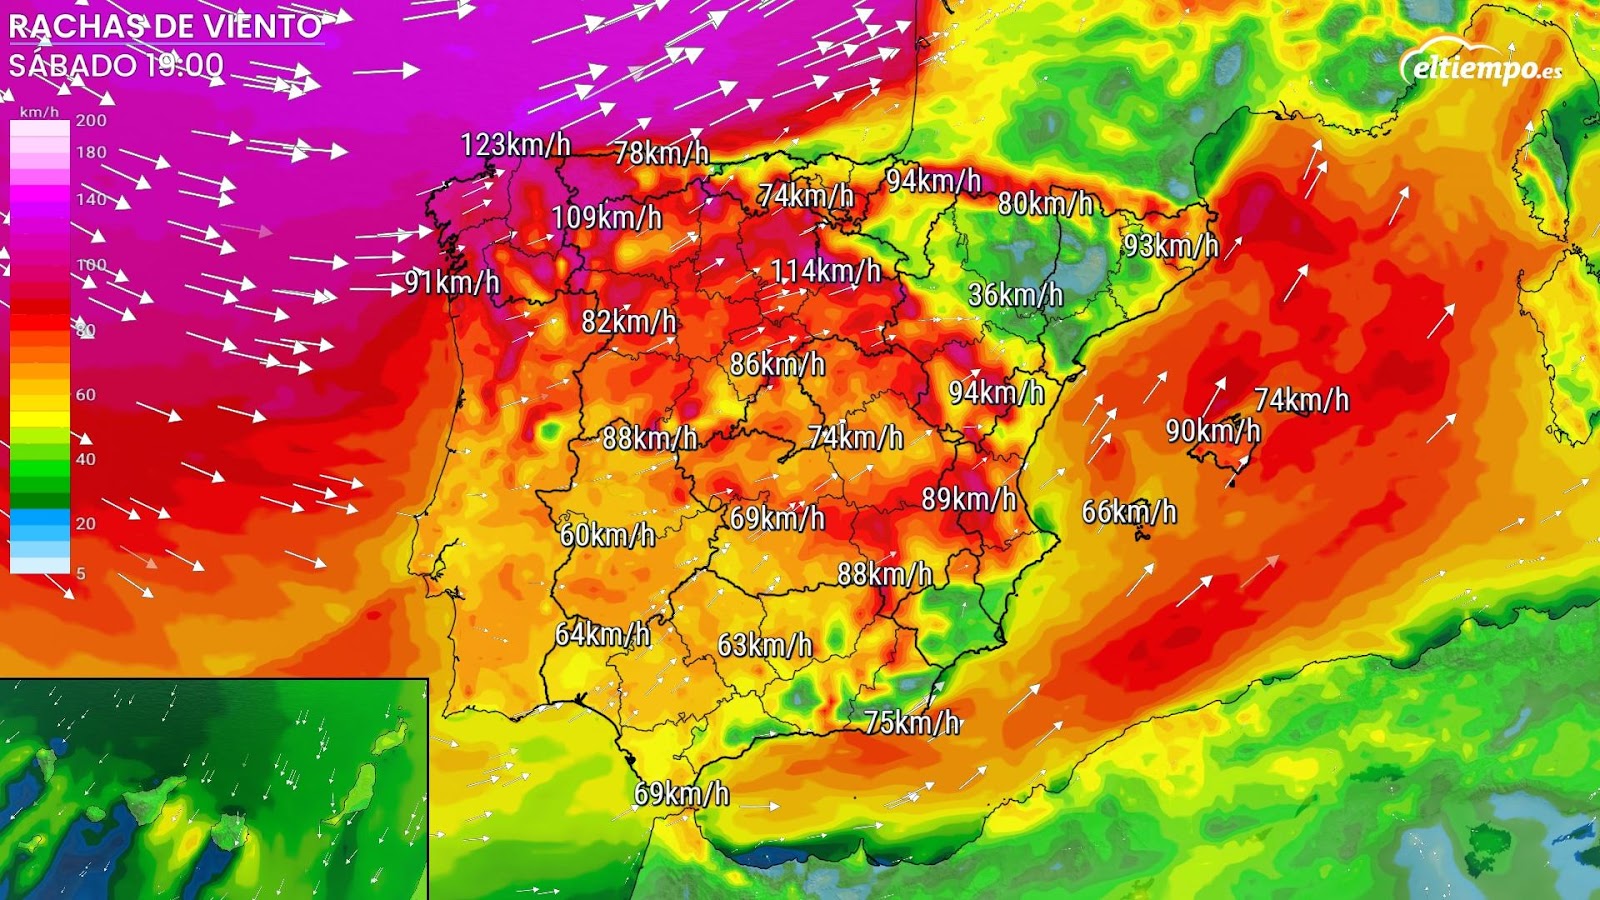 la nueva borrasca que afectará a España dejará fuerte viento el sábado